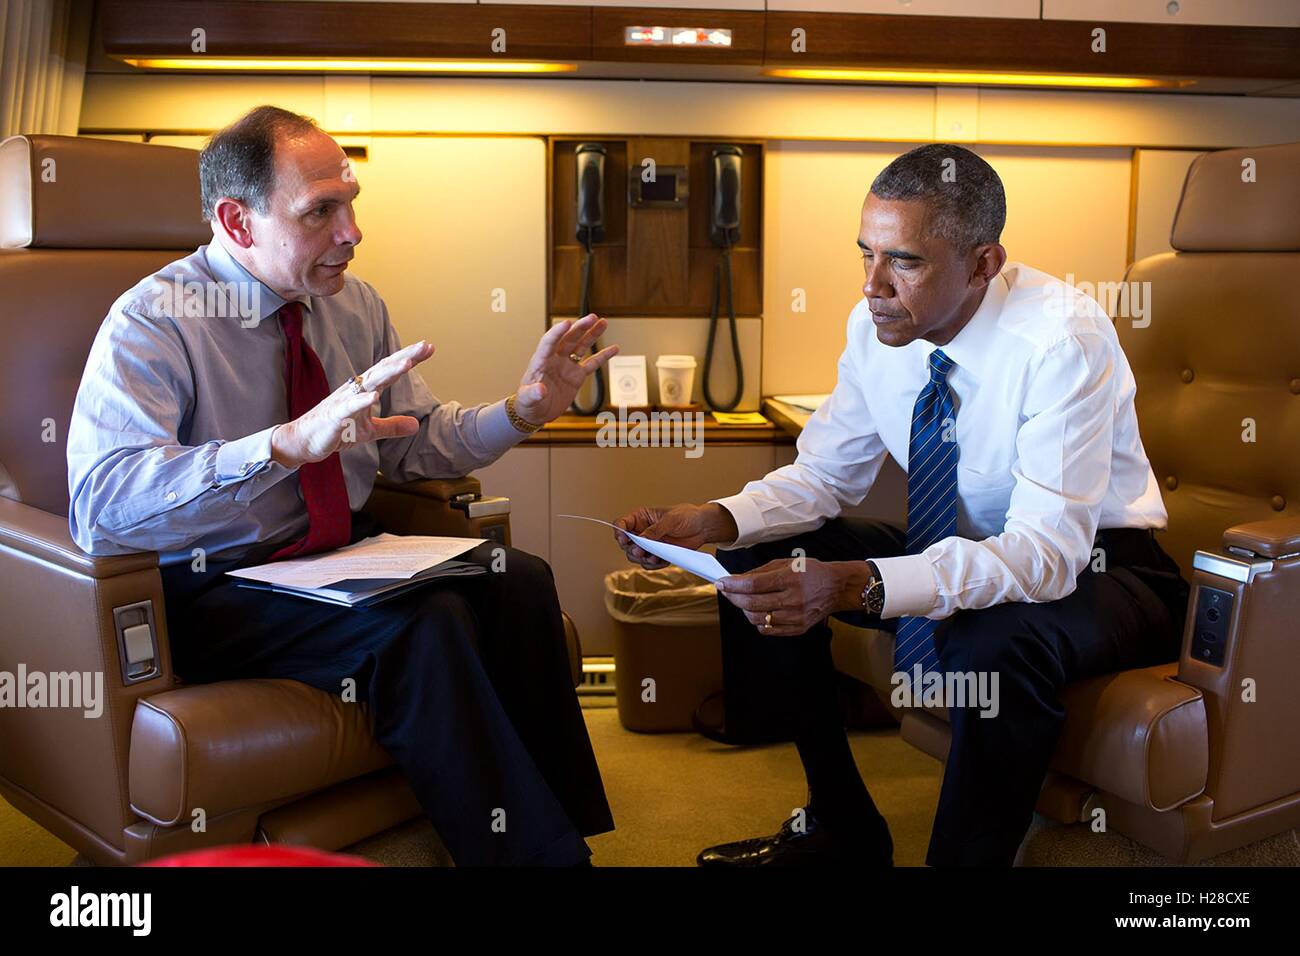 El Presidente de Estados Unidos, Barack Obama, y el Secretario de Asuntos de los Veteranos Robert McDonald hablar y compartir notas a bordo de un avión de la Fuerza Aérea el 26 de agosto de 2014 en vuelo a Charlotte, Carolina del Norte. Foto de stock